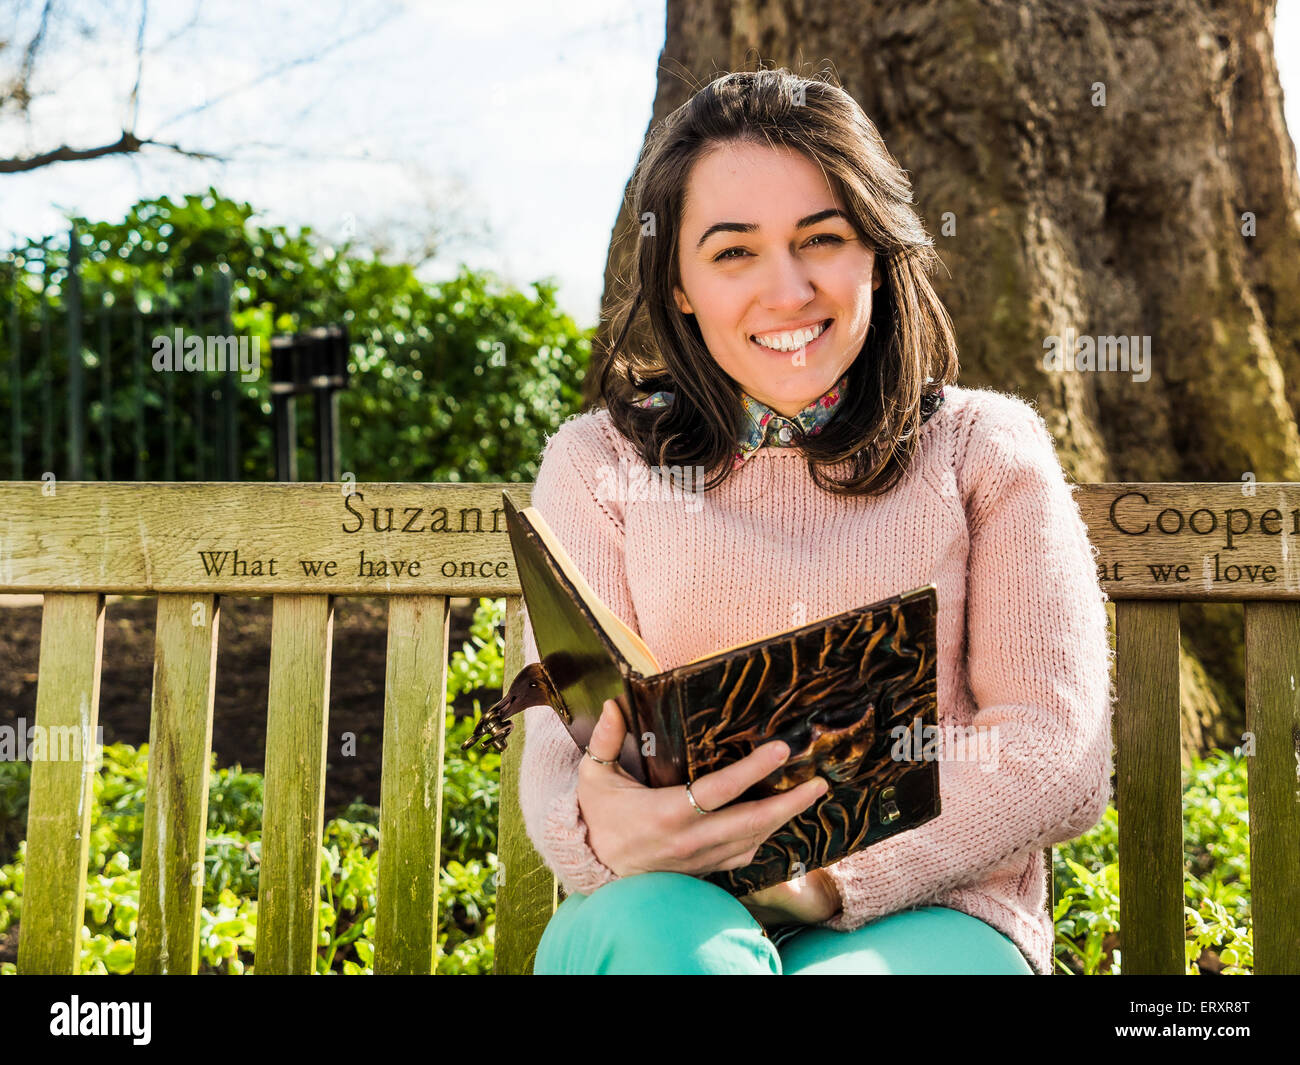 Belleza joven mujer sosteniendo Reserve y sonriente sentado en un banco del parque mirando la cámara Foto de stock